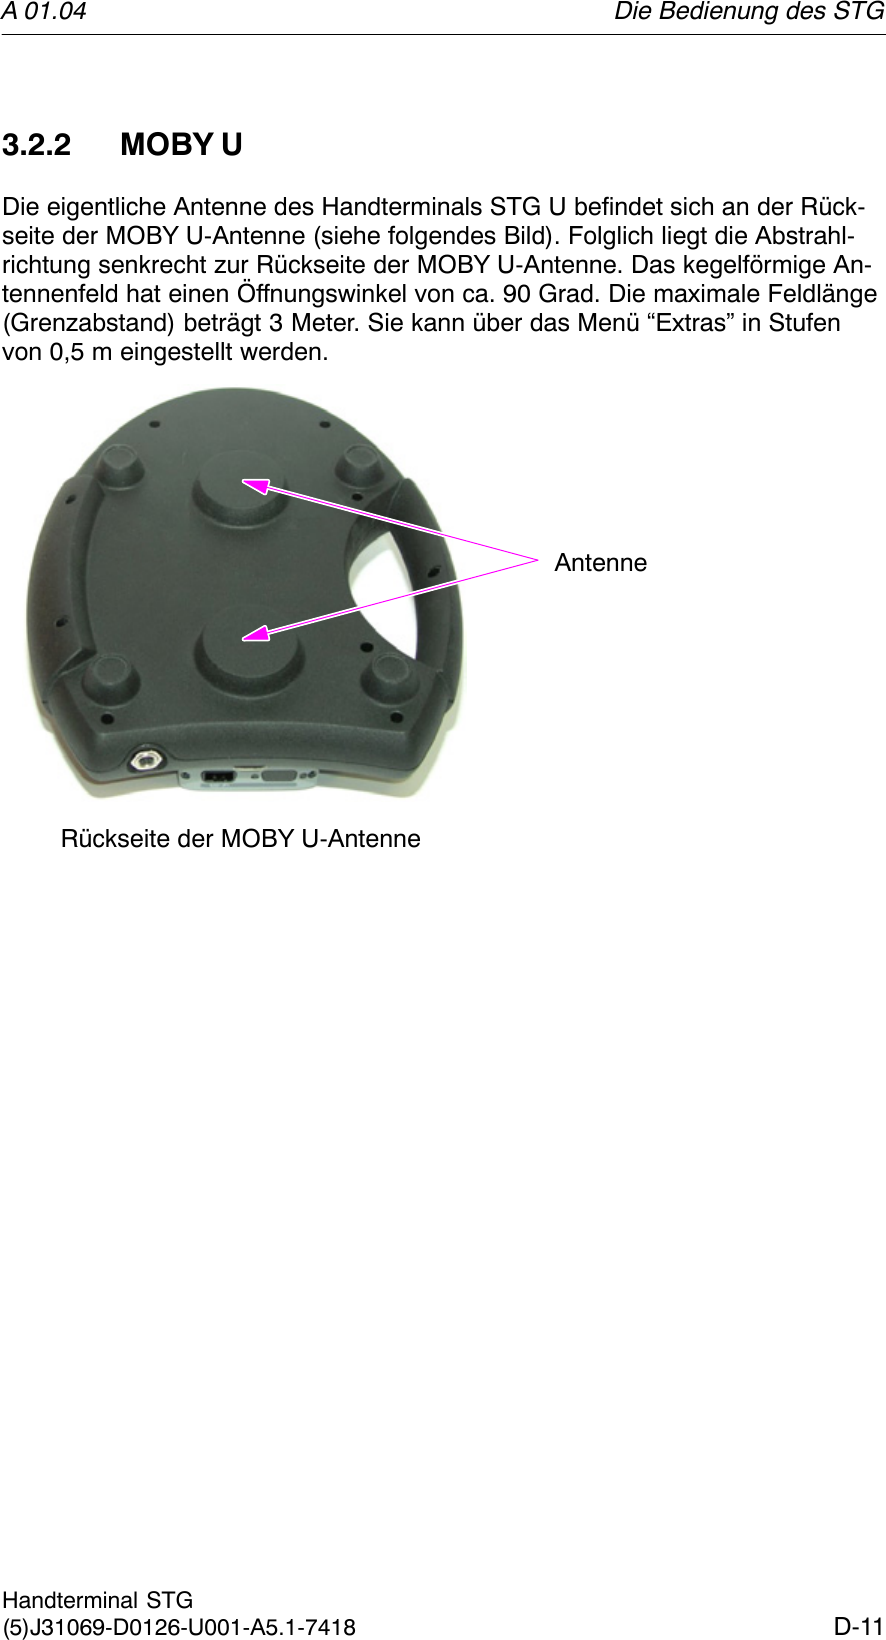 A 01.04D-11Handterminal STG(5)J31069-D0126-U001-A5.1-74183.2.2 MOBY UDie eigentliche Antenne des Handterminals STG U befindet sich an der Rück-seite der MOBY U-Antenne (siehe folgendes Bild). Folglich liegt die Abstrahl-richtung senkrecht zur Rückseite der MOBY U-Antenne. Das kegelförmige An-tennenfeld hat einen Öffnungswinkel von ca. 90 Grad. Die maximale Feldlänge(Grenzabstand) beträgt 3 Meter. Sie kann über das Menü “Extras” in Stufenvon 0,5 m eingestellt werden.Rückseite der MOBY U-AntenneAntenneDie Bedienung des STG